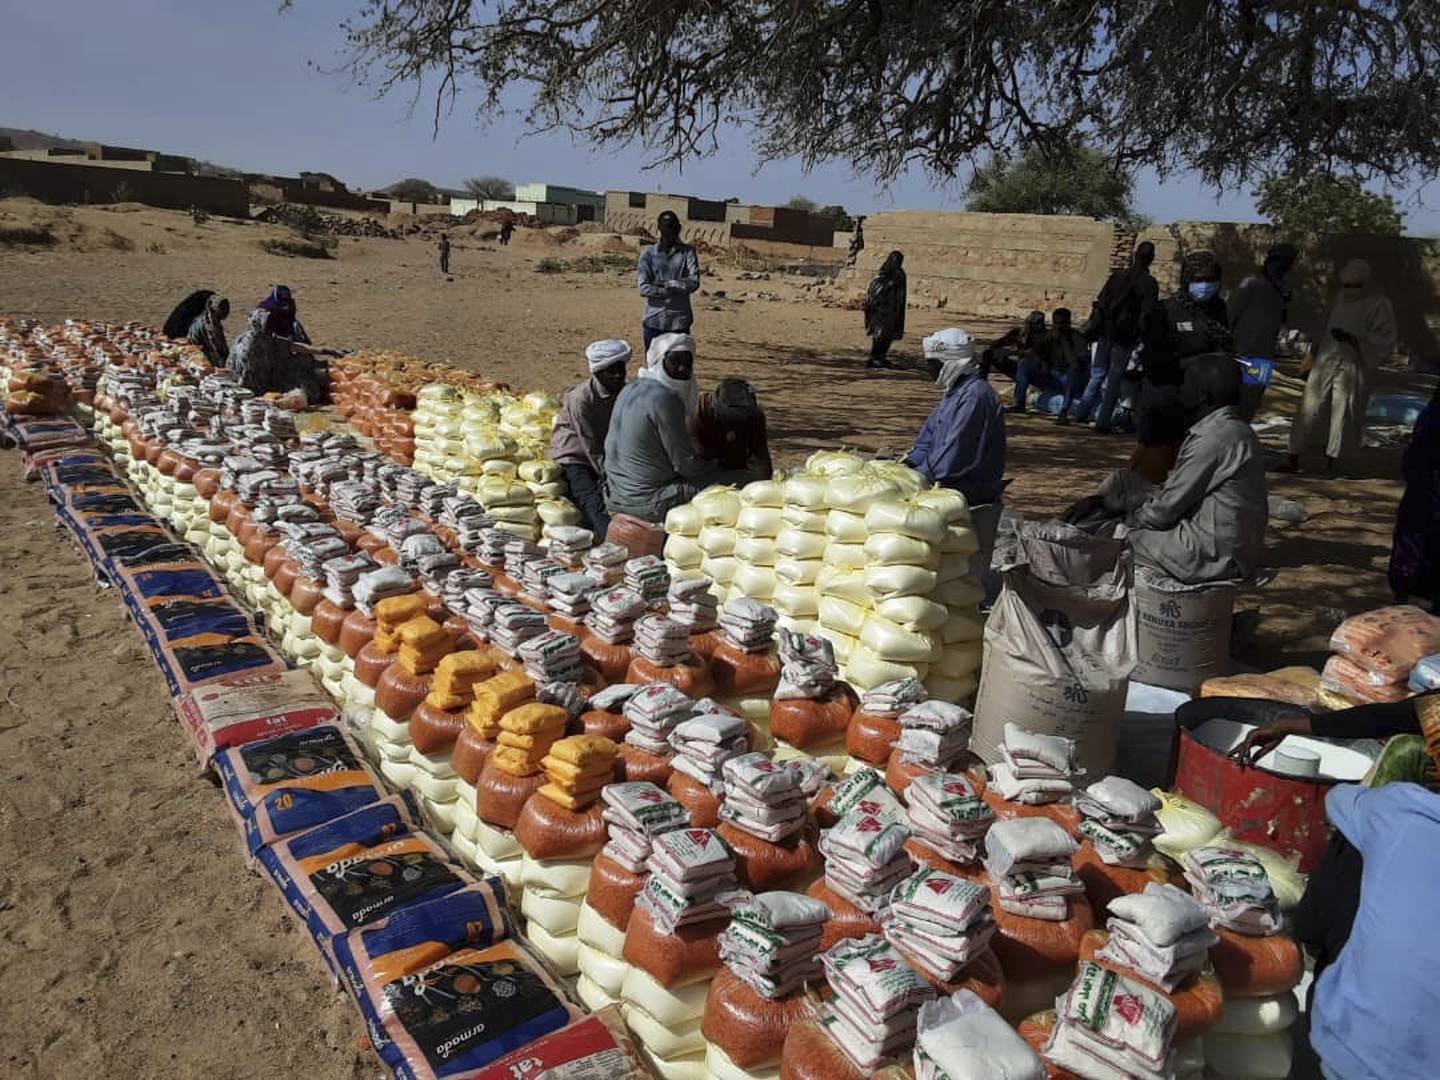 Krigen i Sudan kan utløse verdens verste sultkatastrofe, advarer FNs matvareprogram (WFP). Mer enn halvparten av befolkningen, rundt 25 millioner mennesker, er helt avhengige av nødhjelp utenfra. Dette bildet er fra matutdeling i Kulbus i Darfur-regionen. Foto: World Relief / AP / NTB